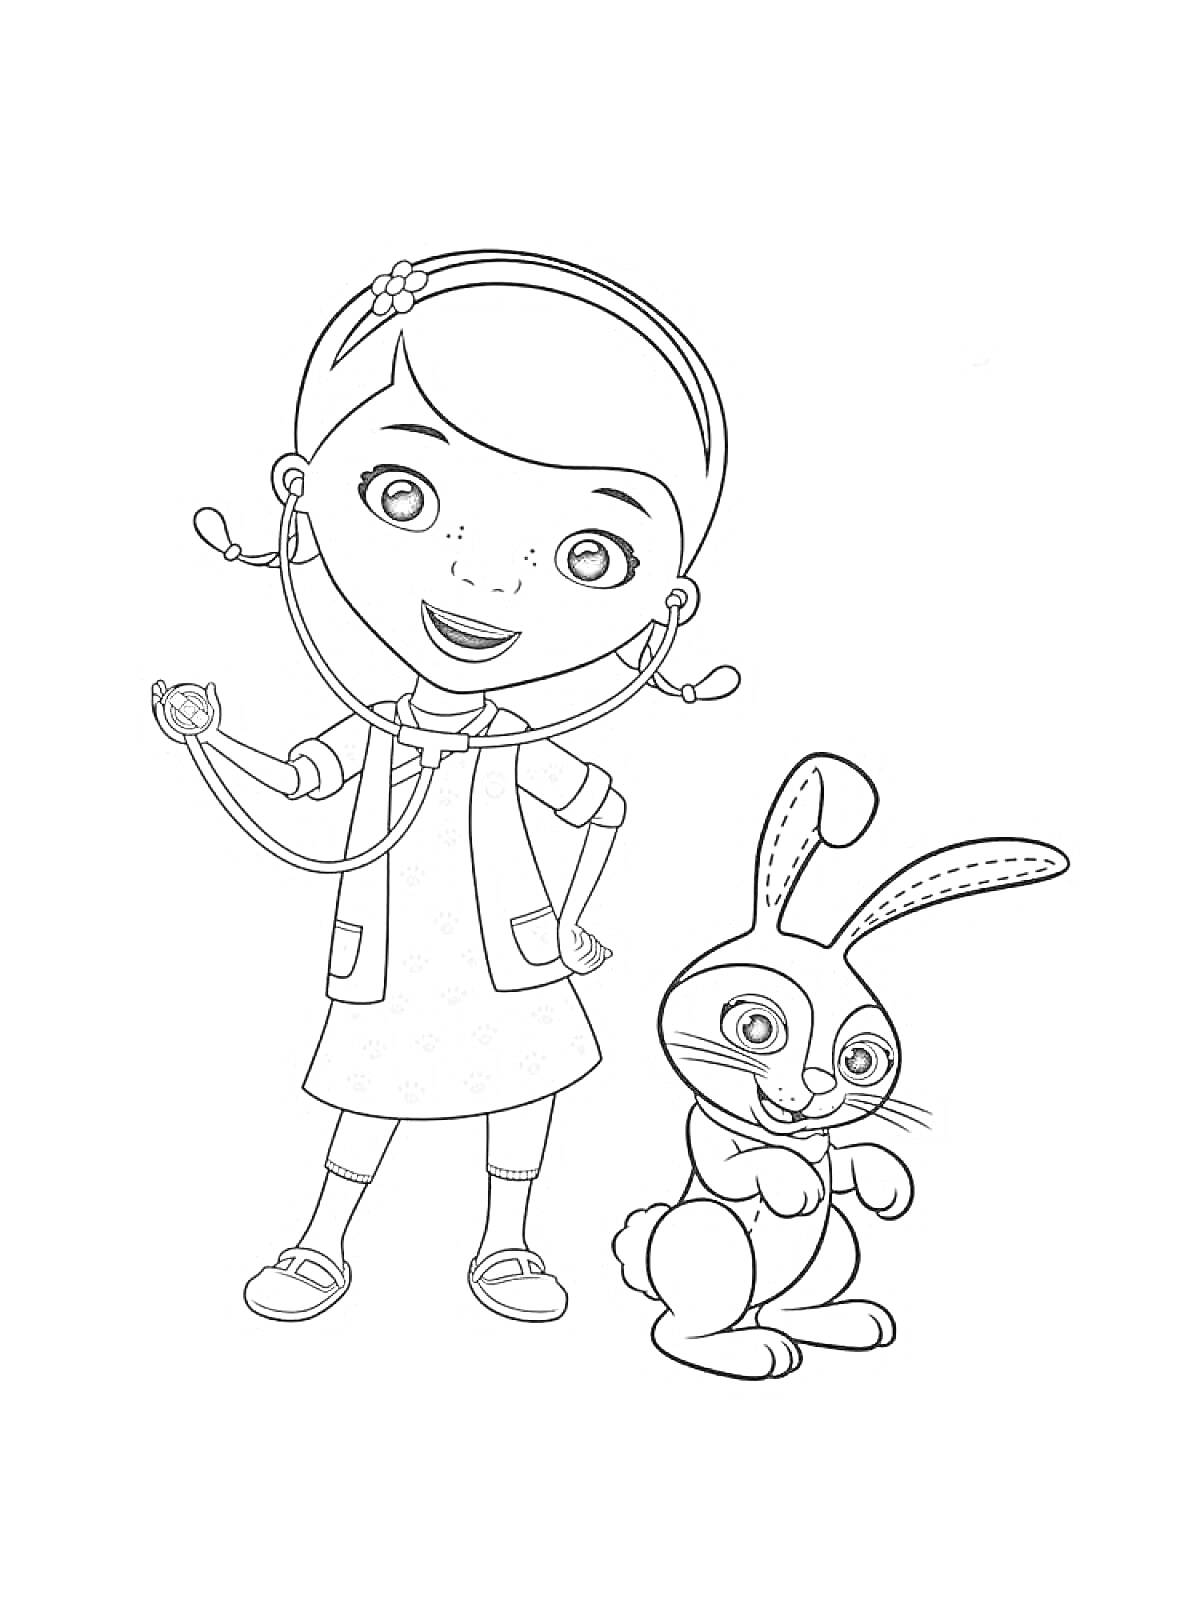 Доктор Плюшева со стетоскопом и кролик